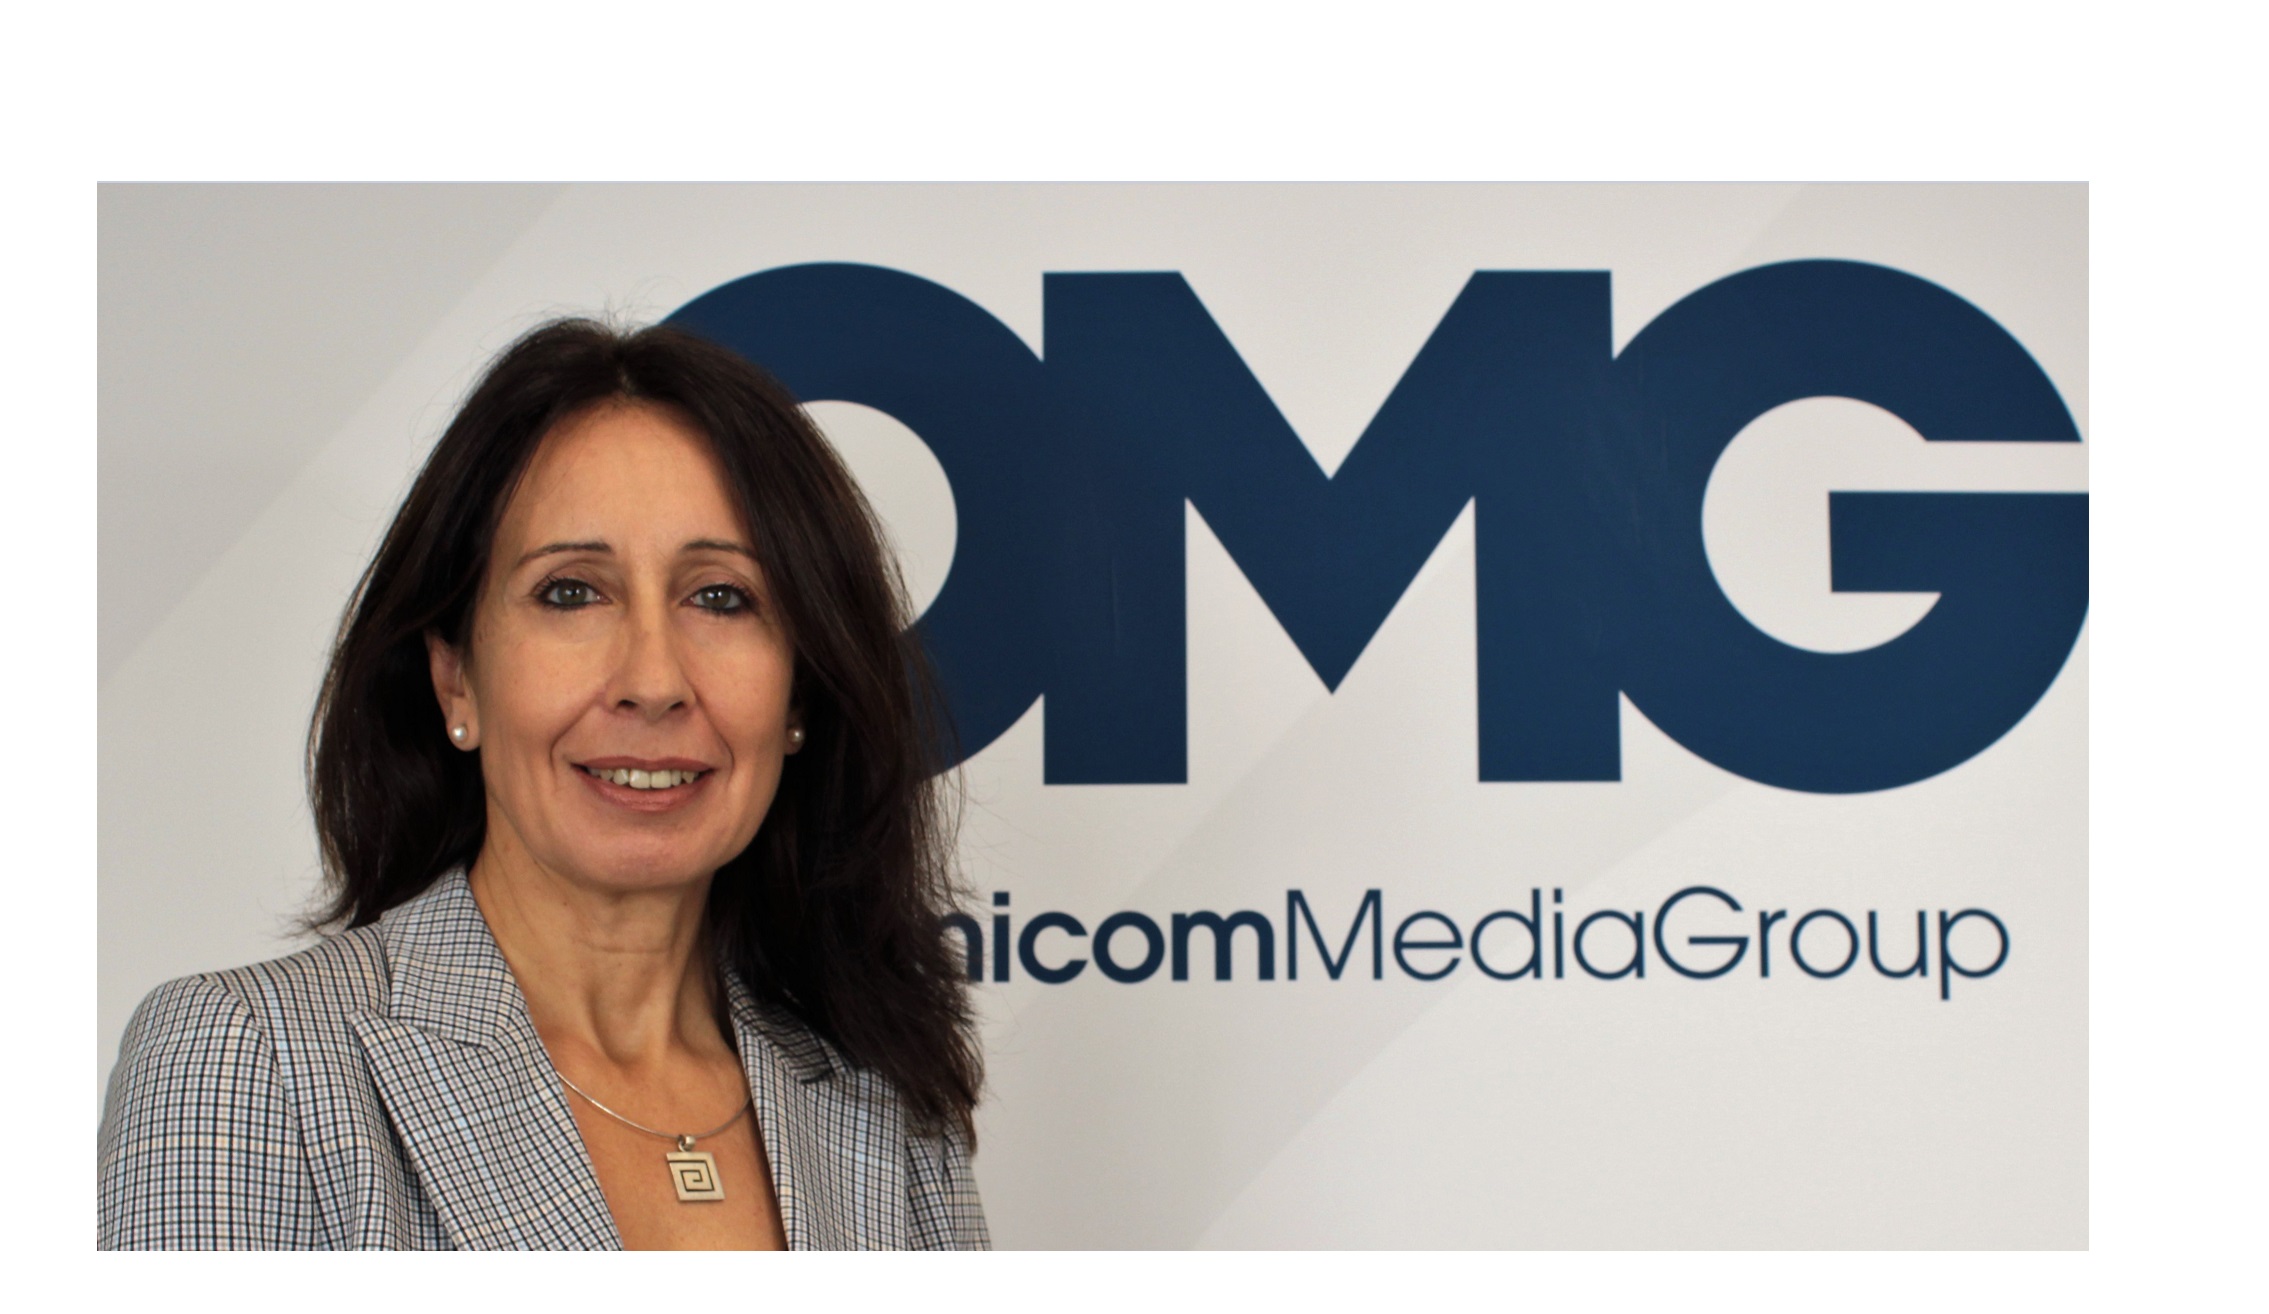 OmnicomMediaGroup , incorpora , Carmen Limia , liderar , nueva división , eCommerce, programapublicidad